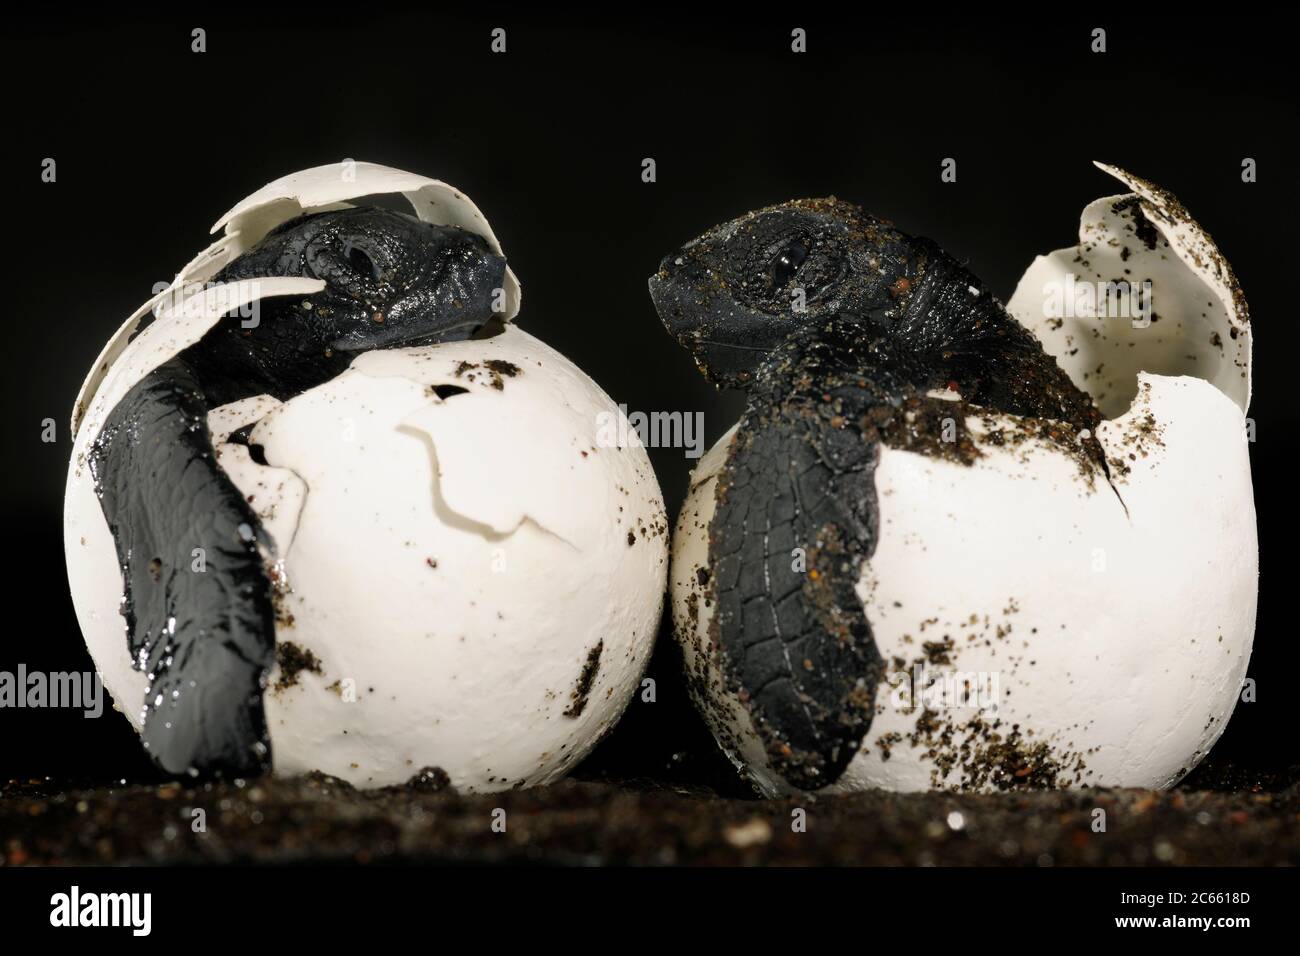 Ces alevins d'une tortue de mer ridley (Lepidochelys olivacea) devraient être enterrés et protégés sous 40 centimètres de sable chaud, mais un chien domestique les a creusés à la plage d'Ostional au Costa Rica. Il faut près de deux mois pour qu'un œuf de tortue de mer se développe dans un petit reptile marin parfait. [taille d'un organisme : 6 cm] Banque D'Images